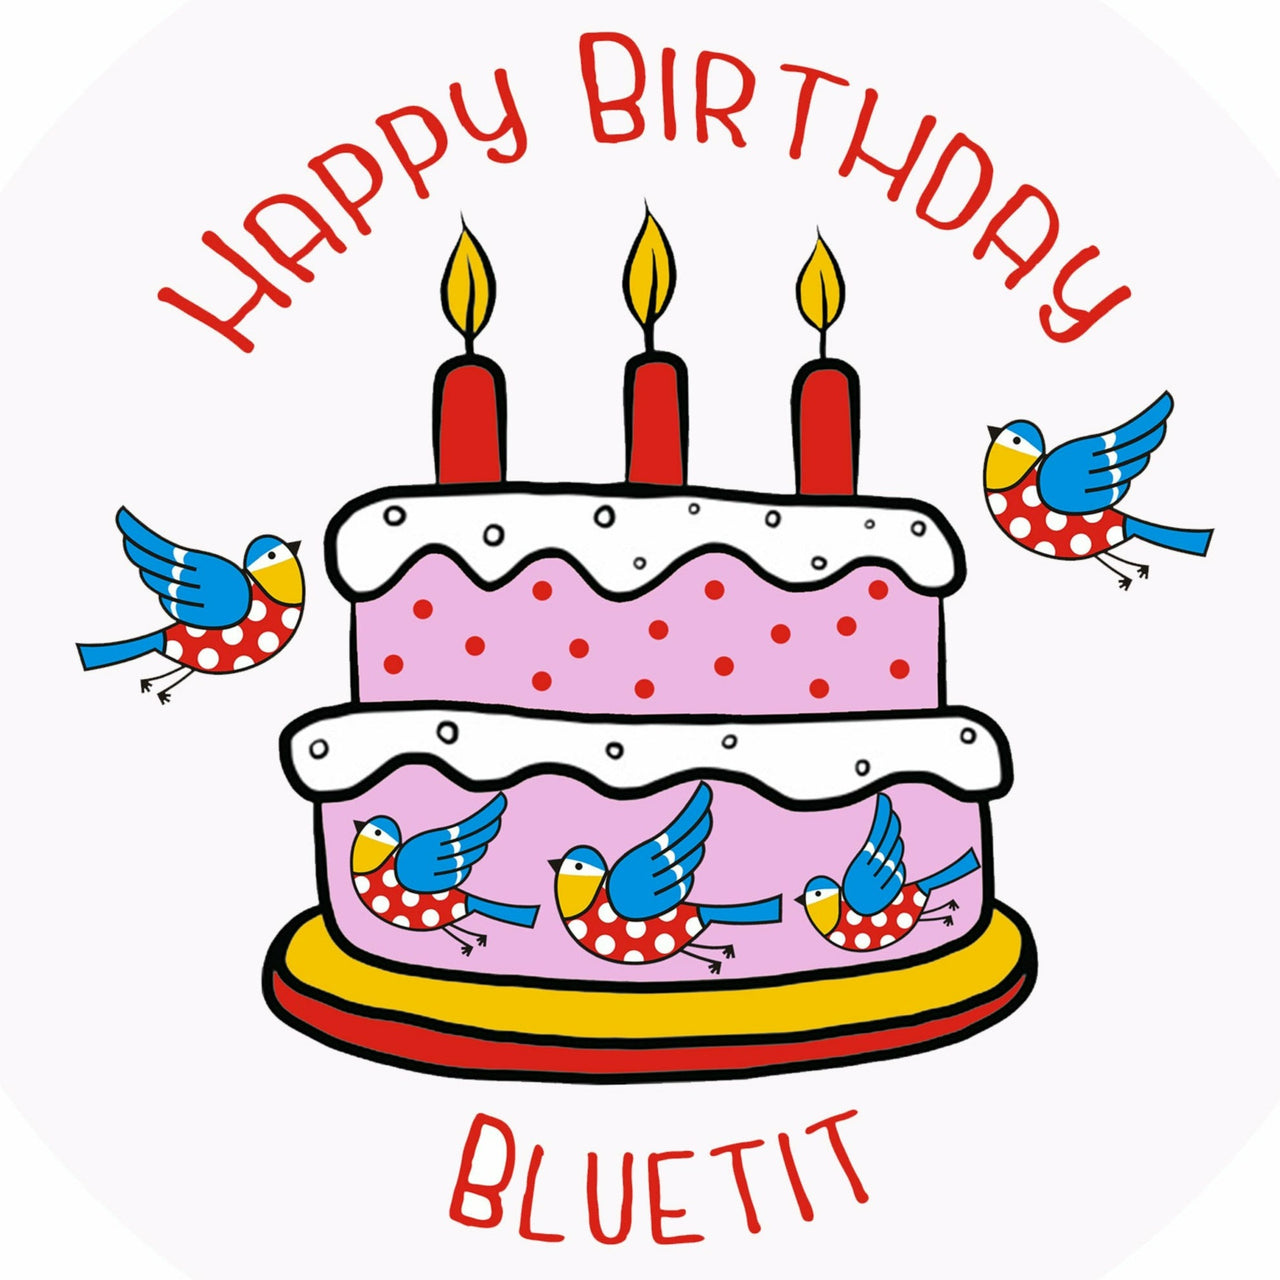 Happy Birthday Bluetit Badge